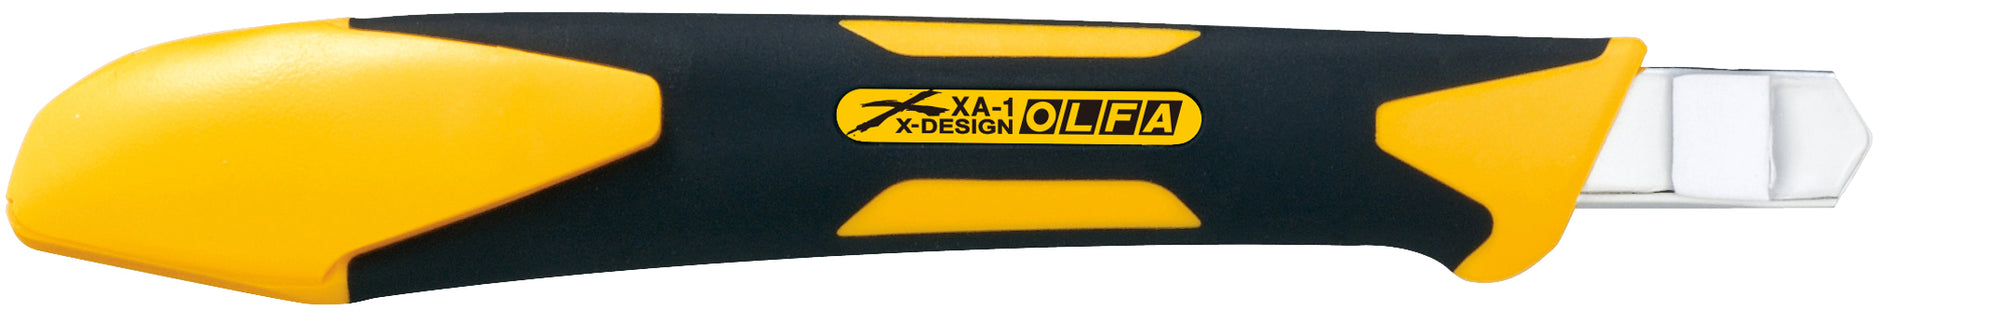 Olfa X-Desgin 9mm XA-1 Fiberglass Precision Knife